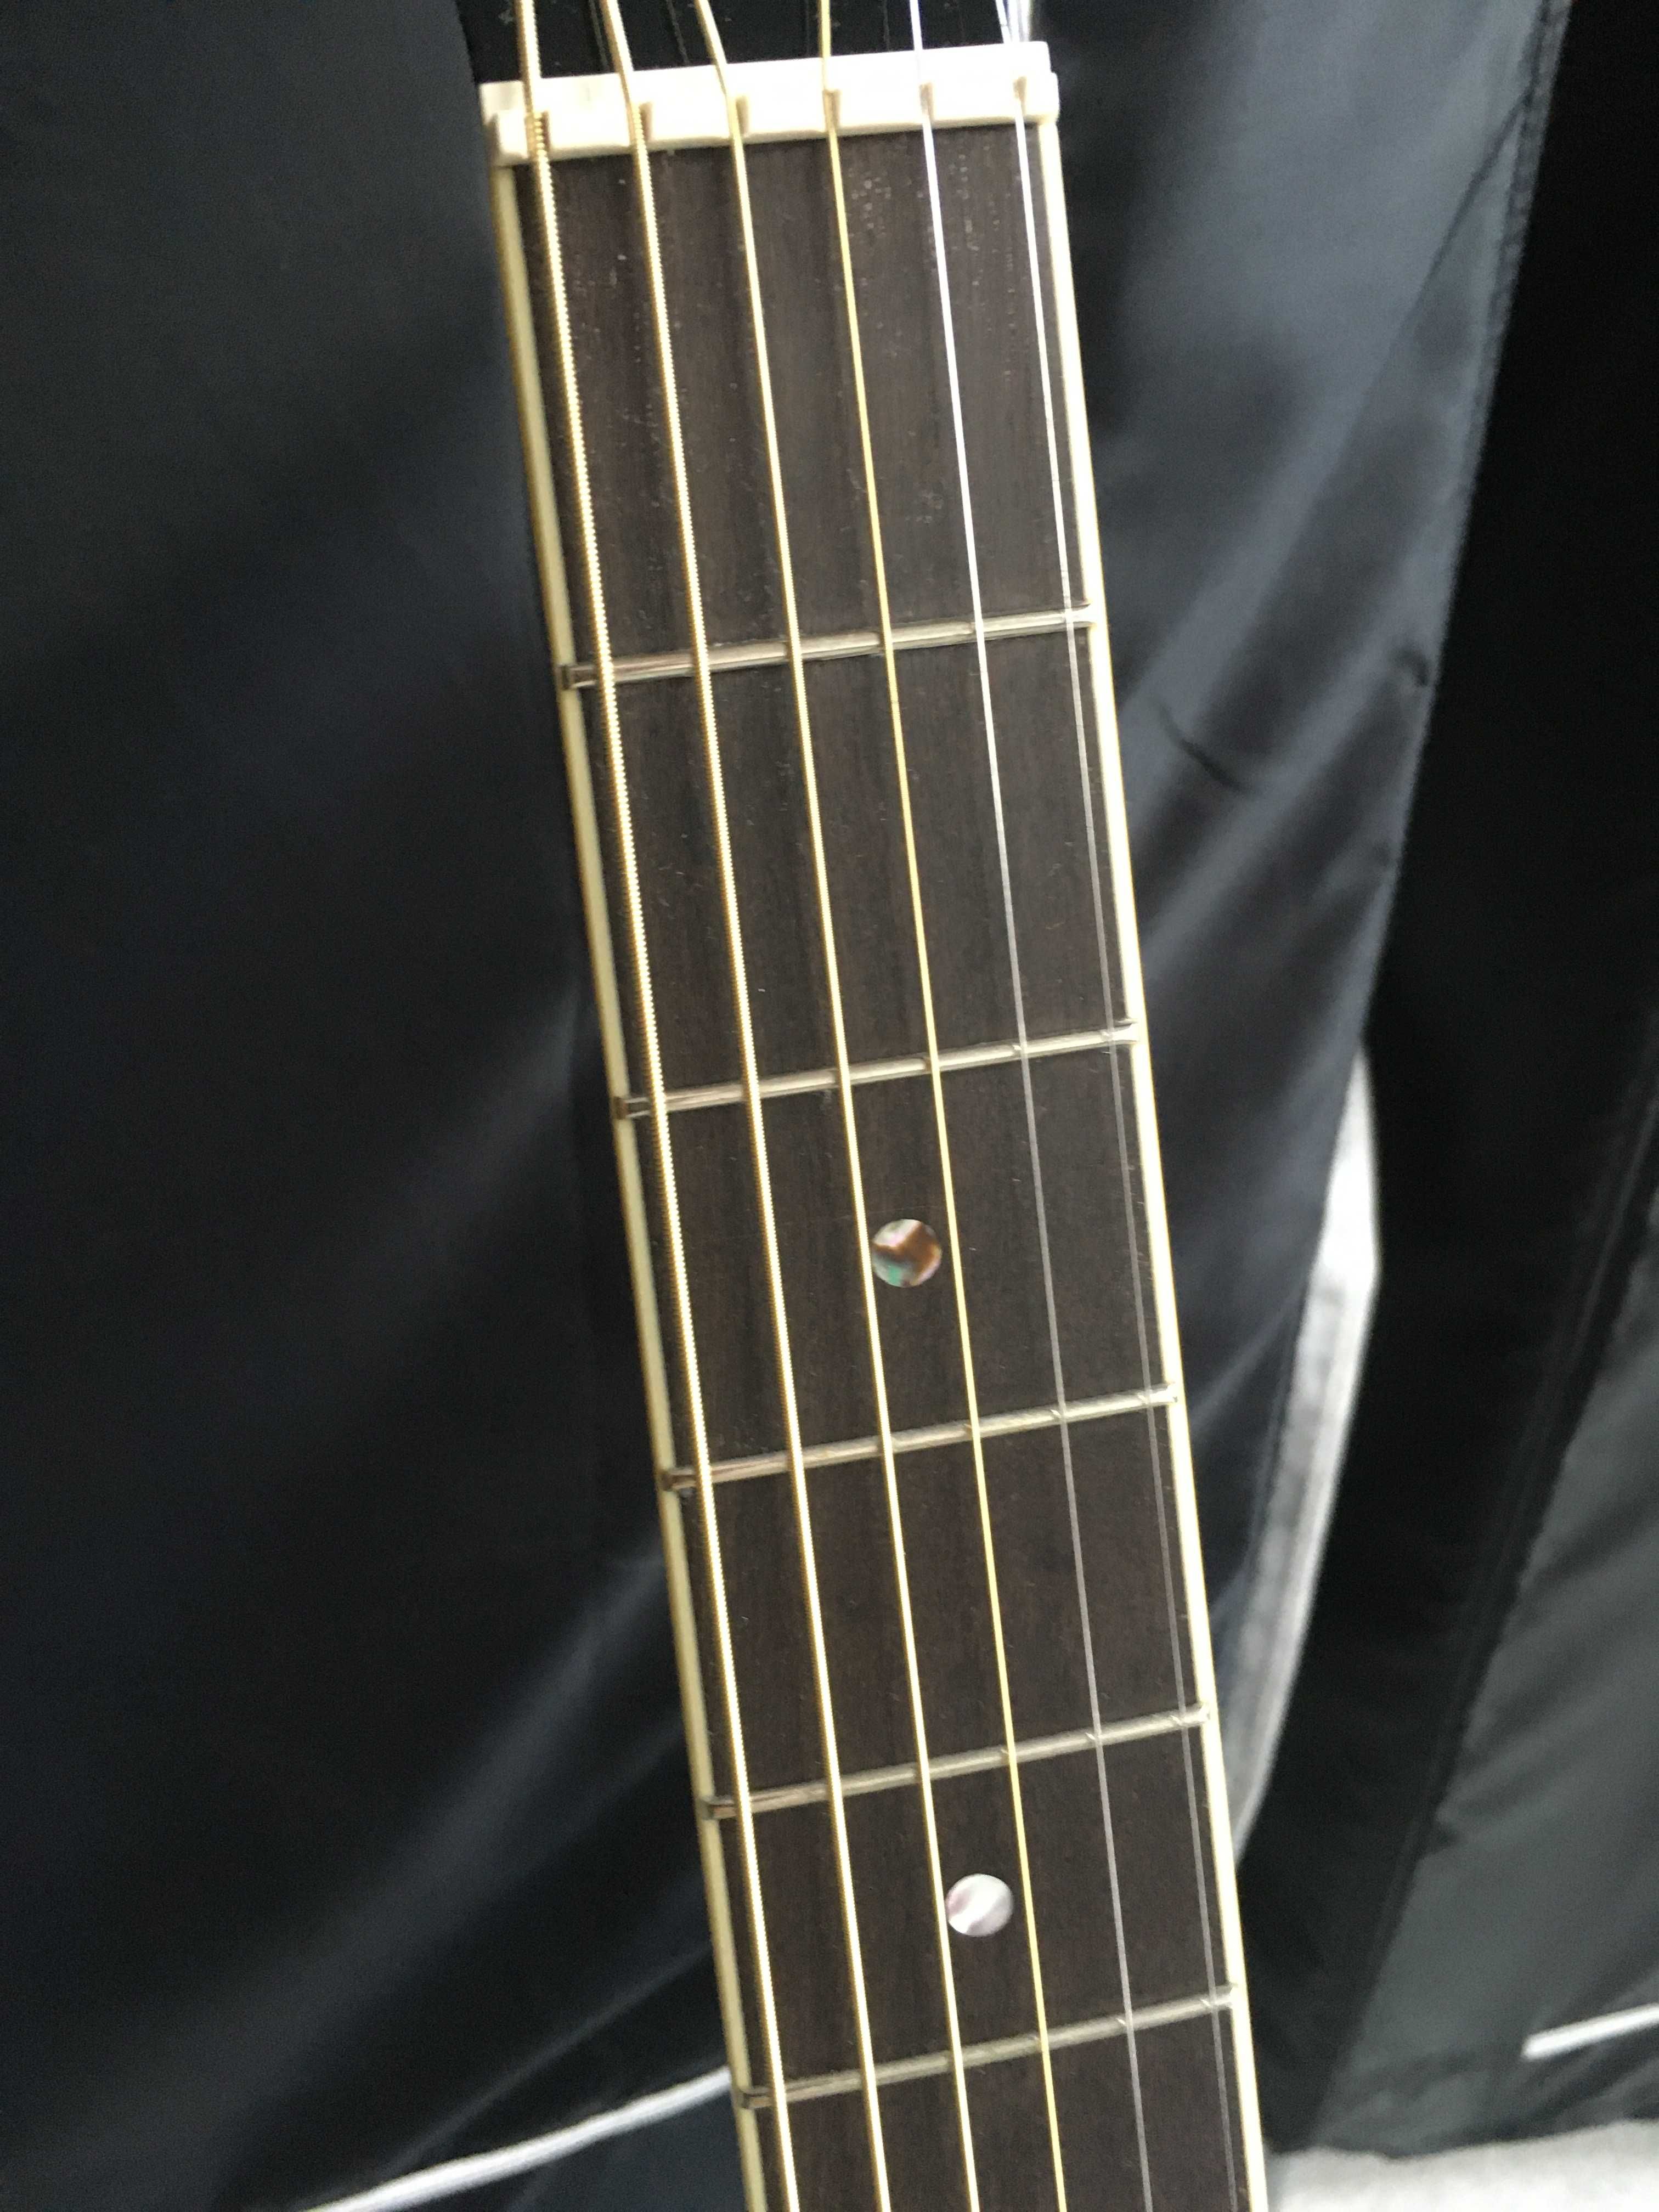 Gitara elektroakustyczna Ibanez JSA 10 BK Joe Satriani stan fabryczny